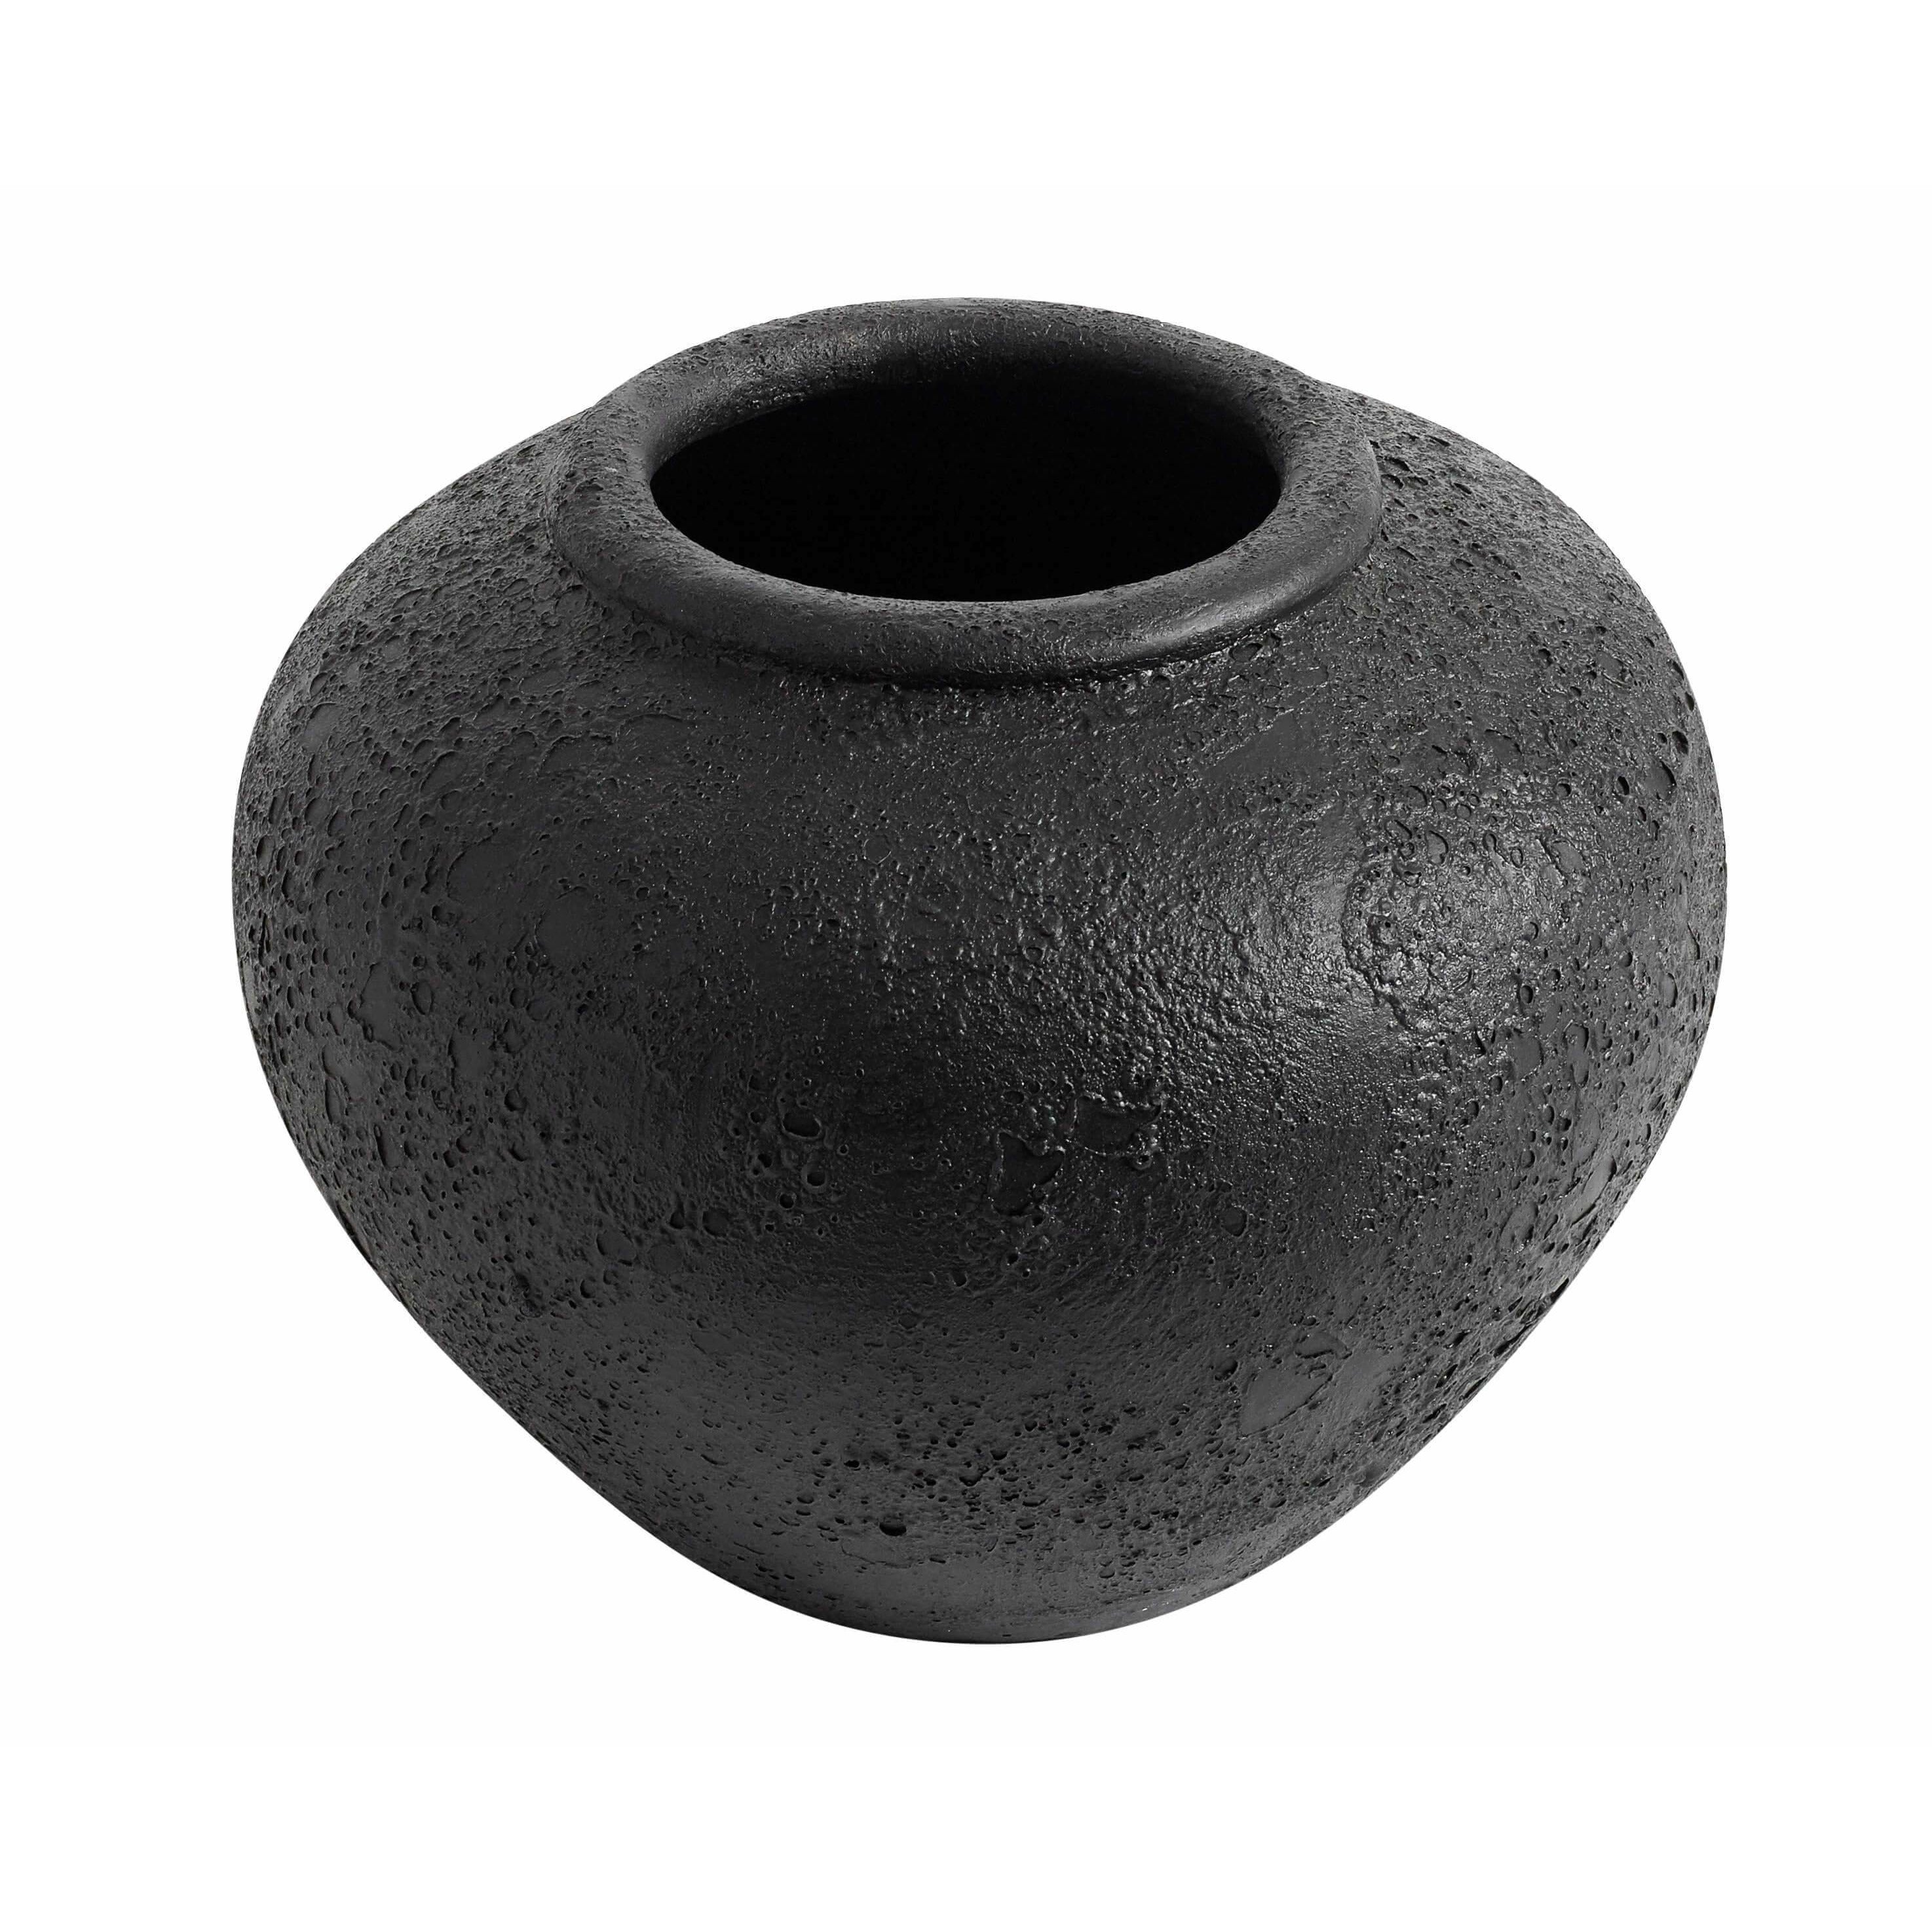 Muubs Luna Vase Black, 26 cm